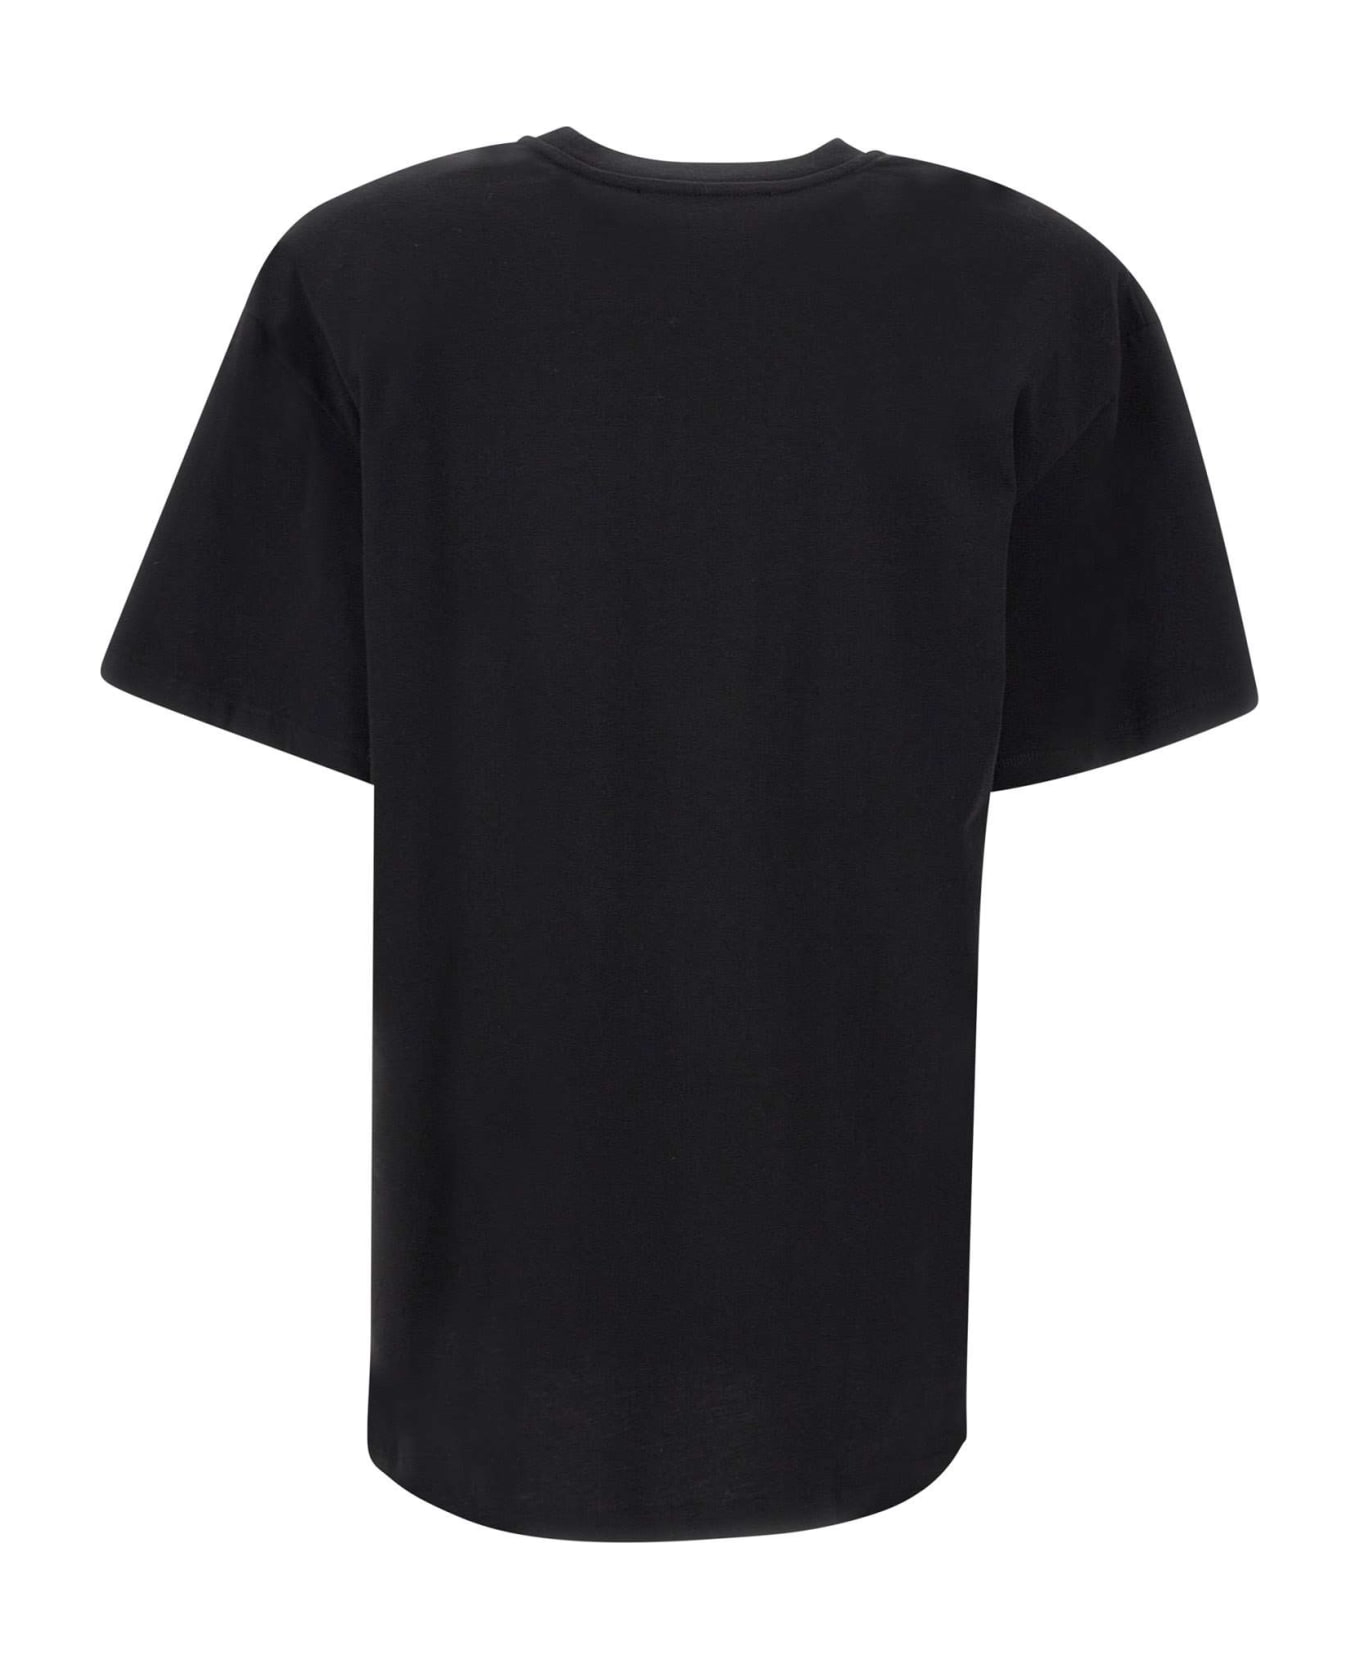 Rotate by Birger Christensen 'graddy' Cotton T-shirt - Nero